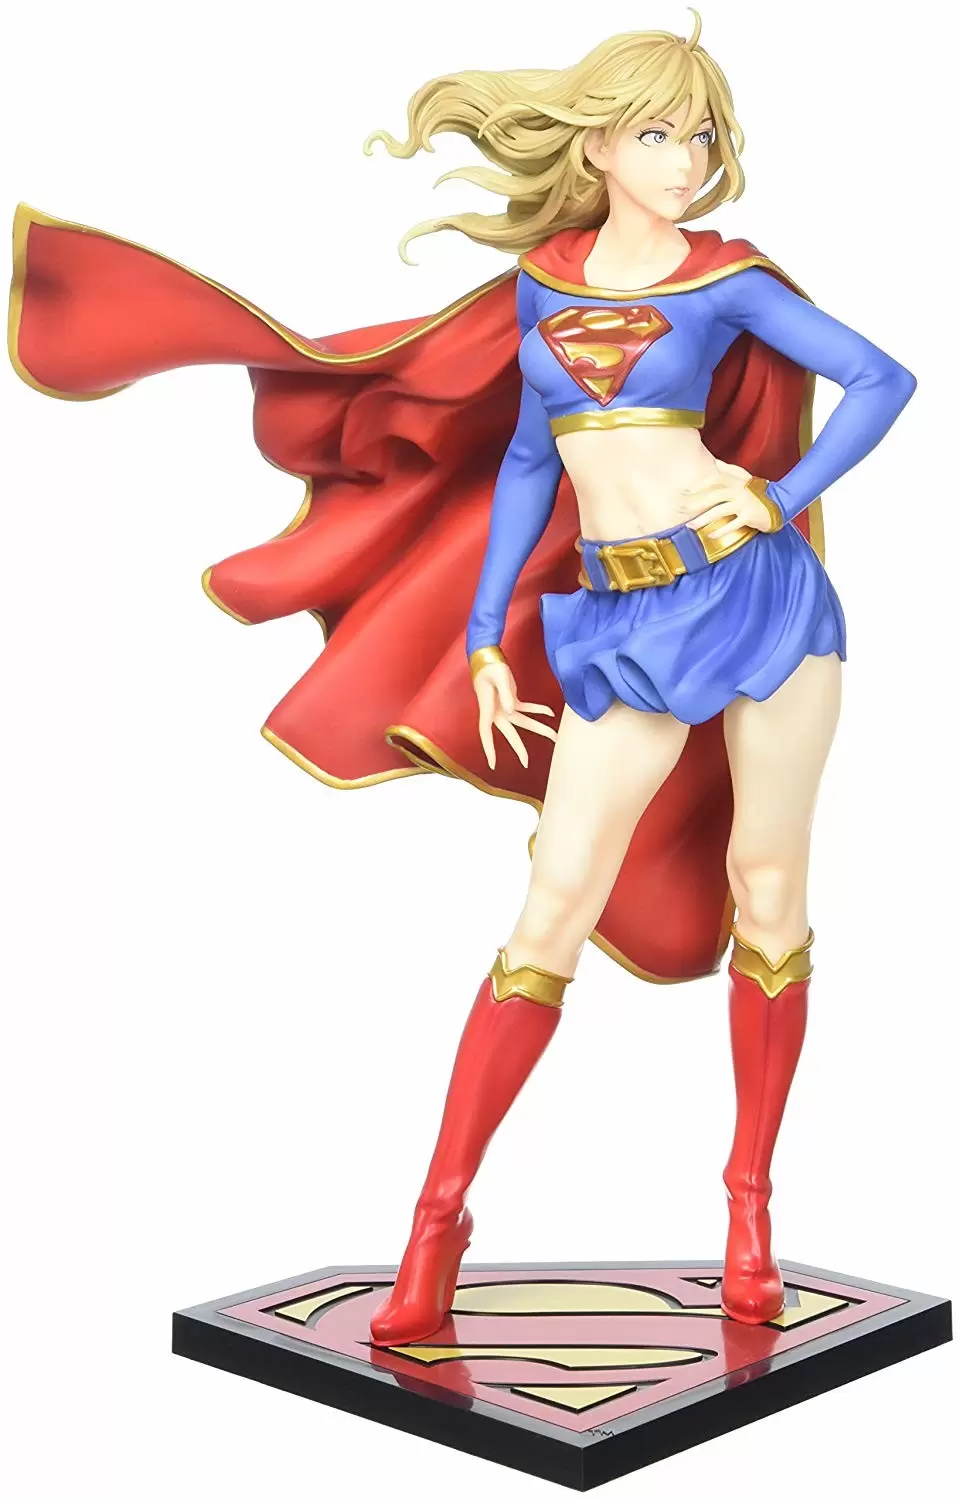 Bishoujo Kotobukiya - DC Comics - SuperGirl Returns - Bishoujo